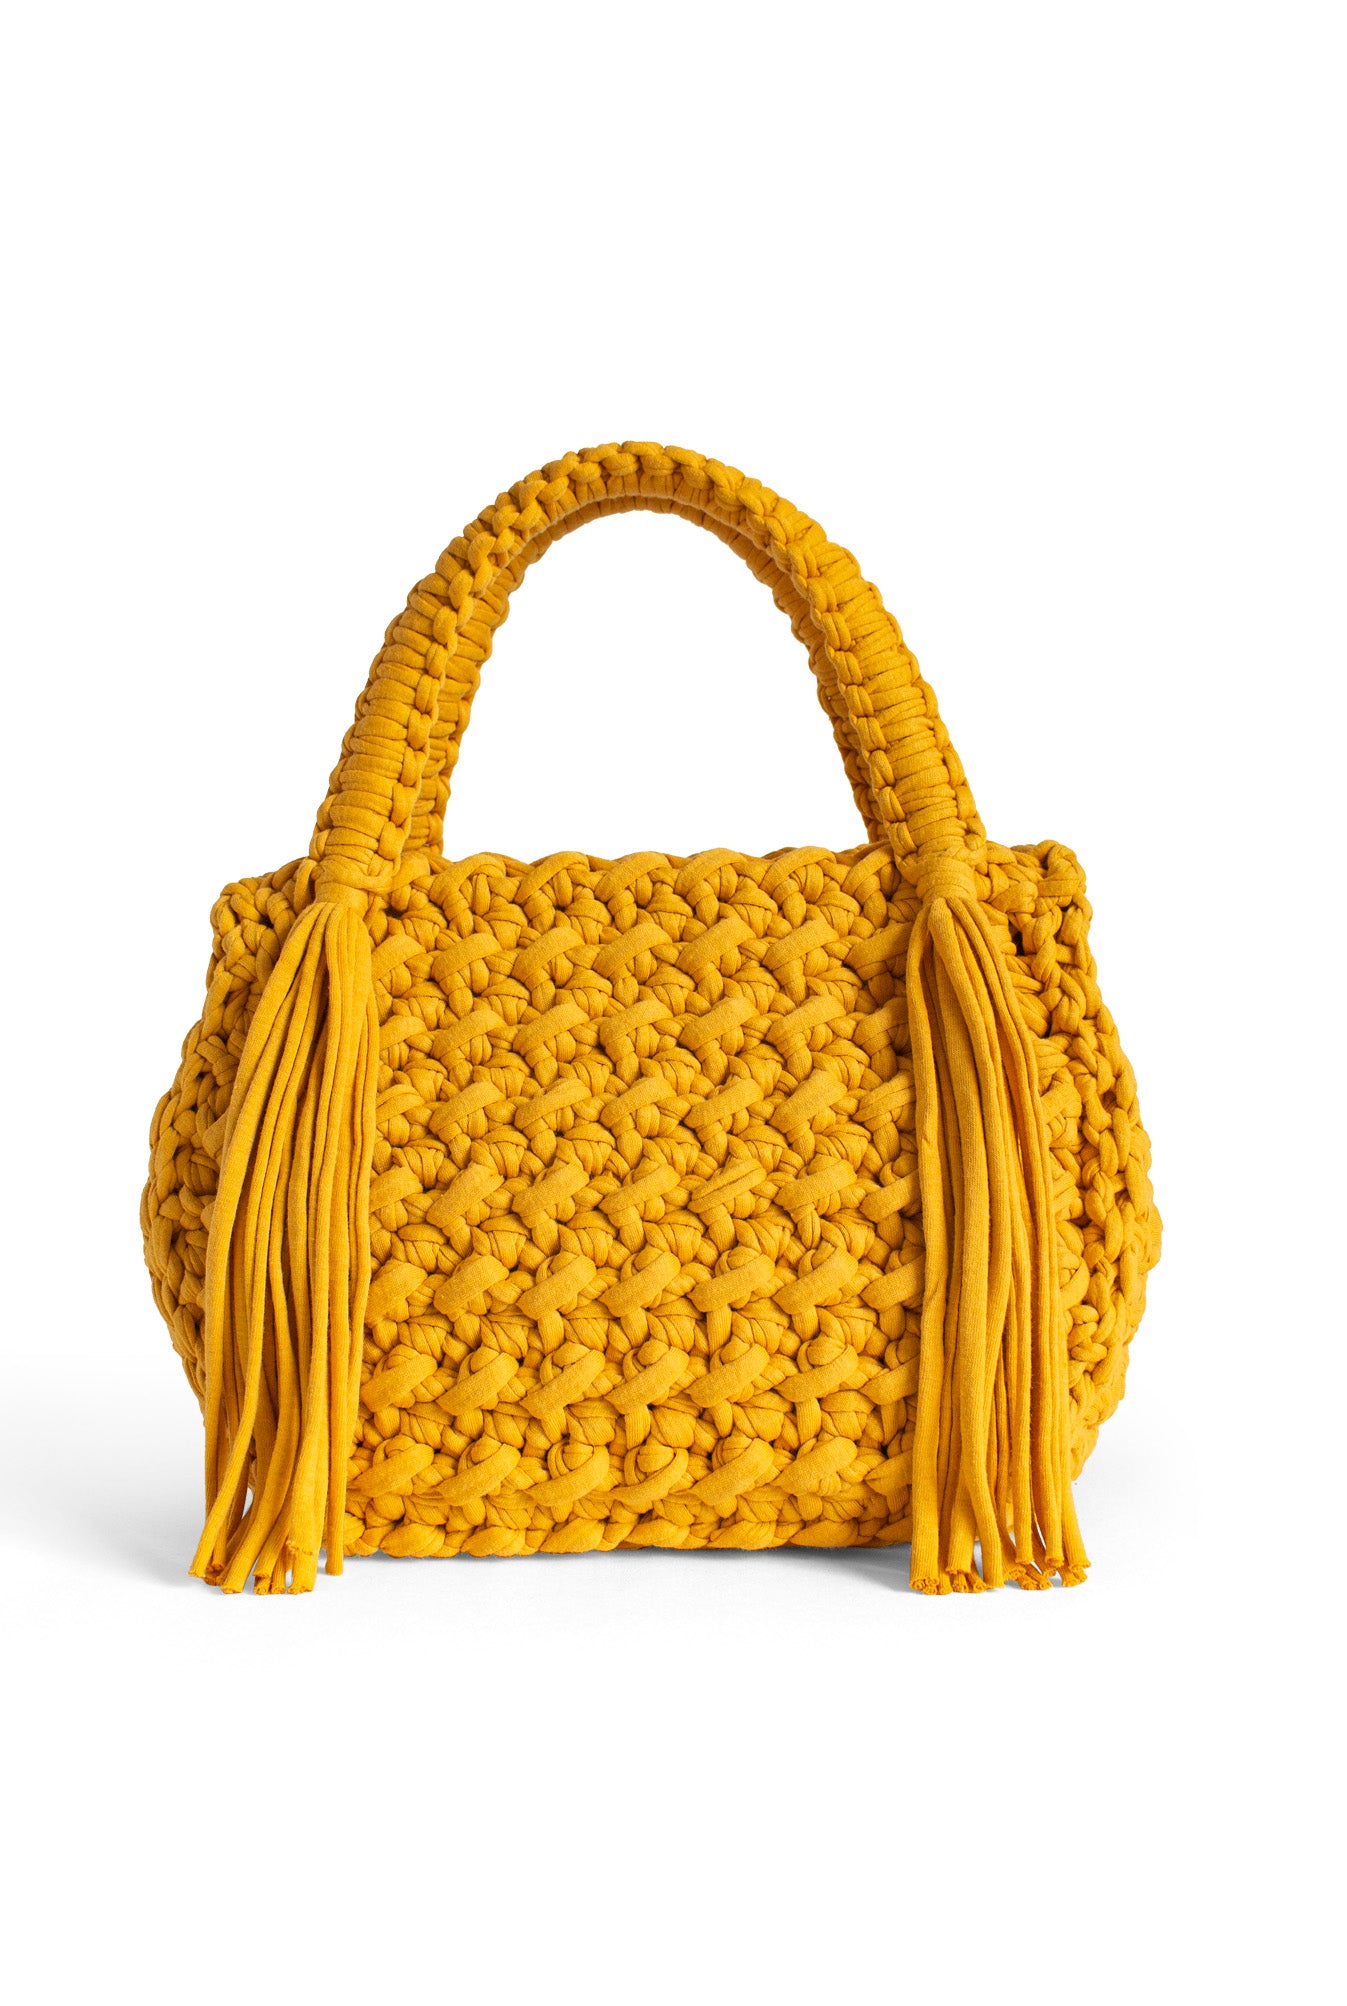 Honeycomb Crochet Handbag – Equal Hands